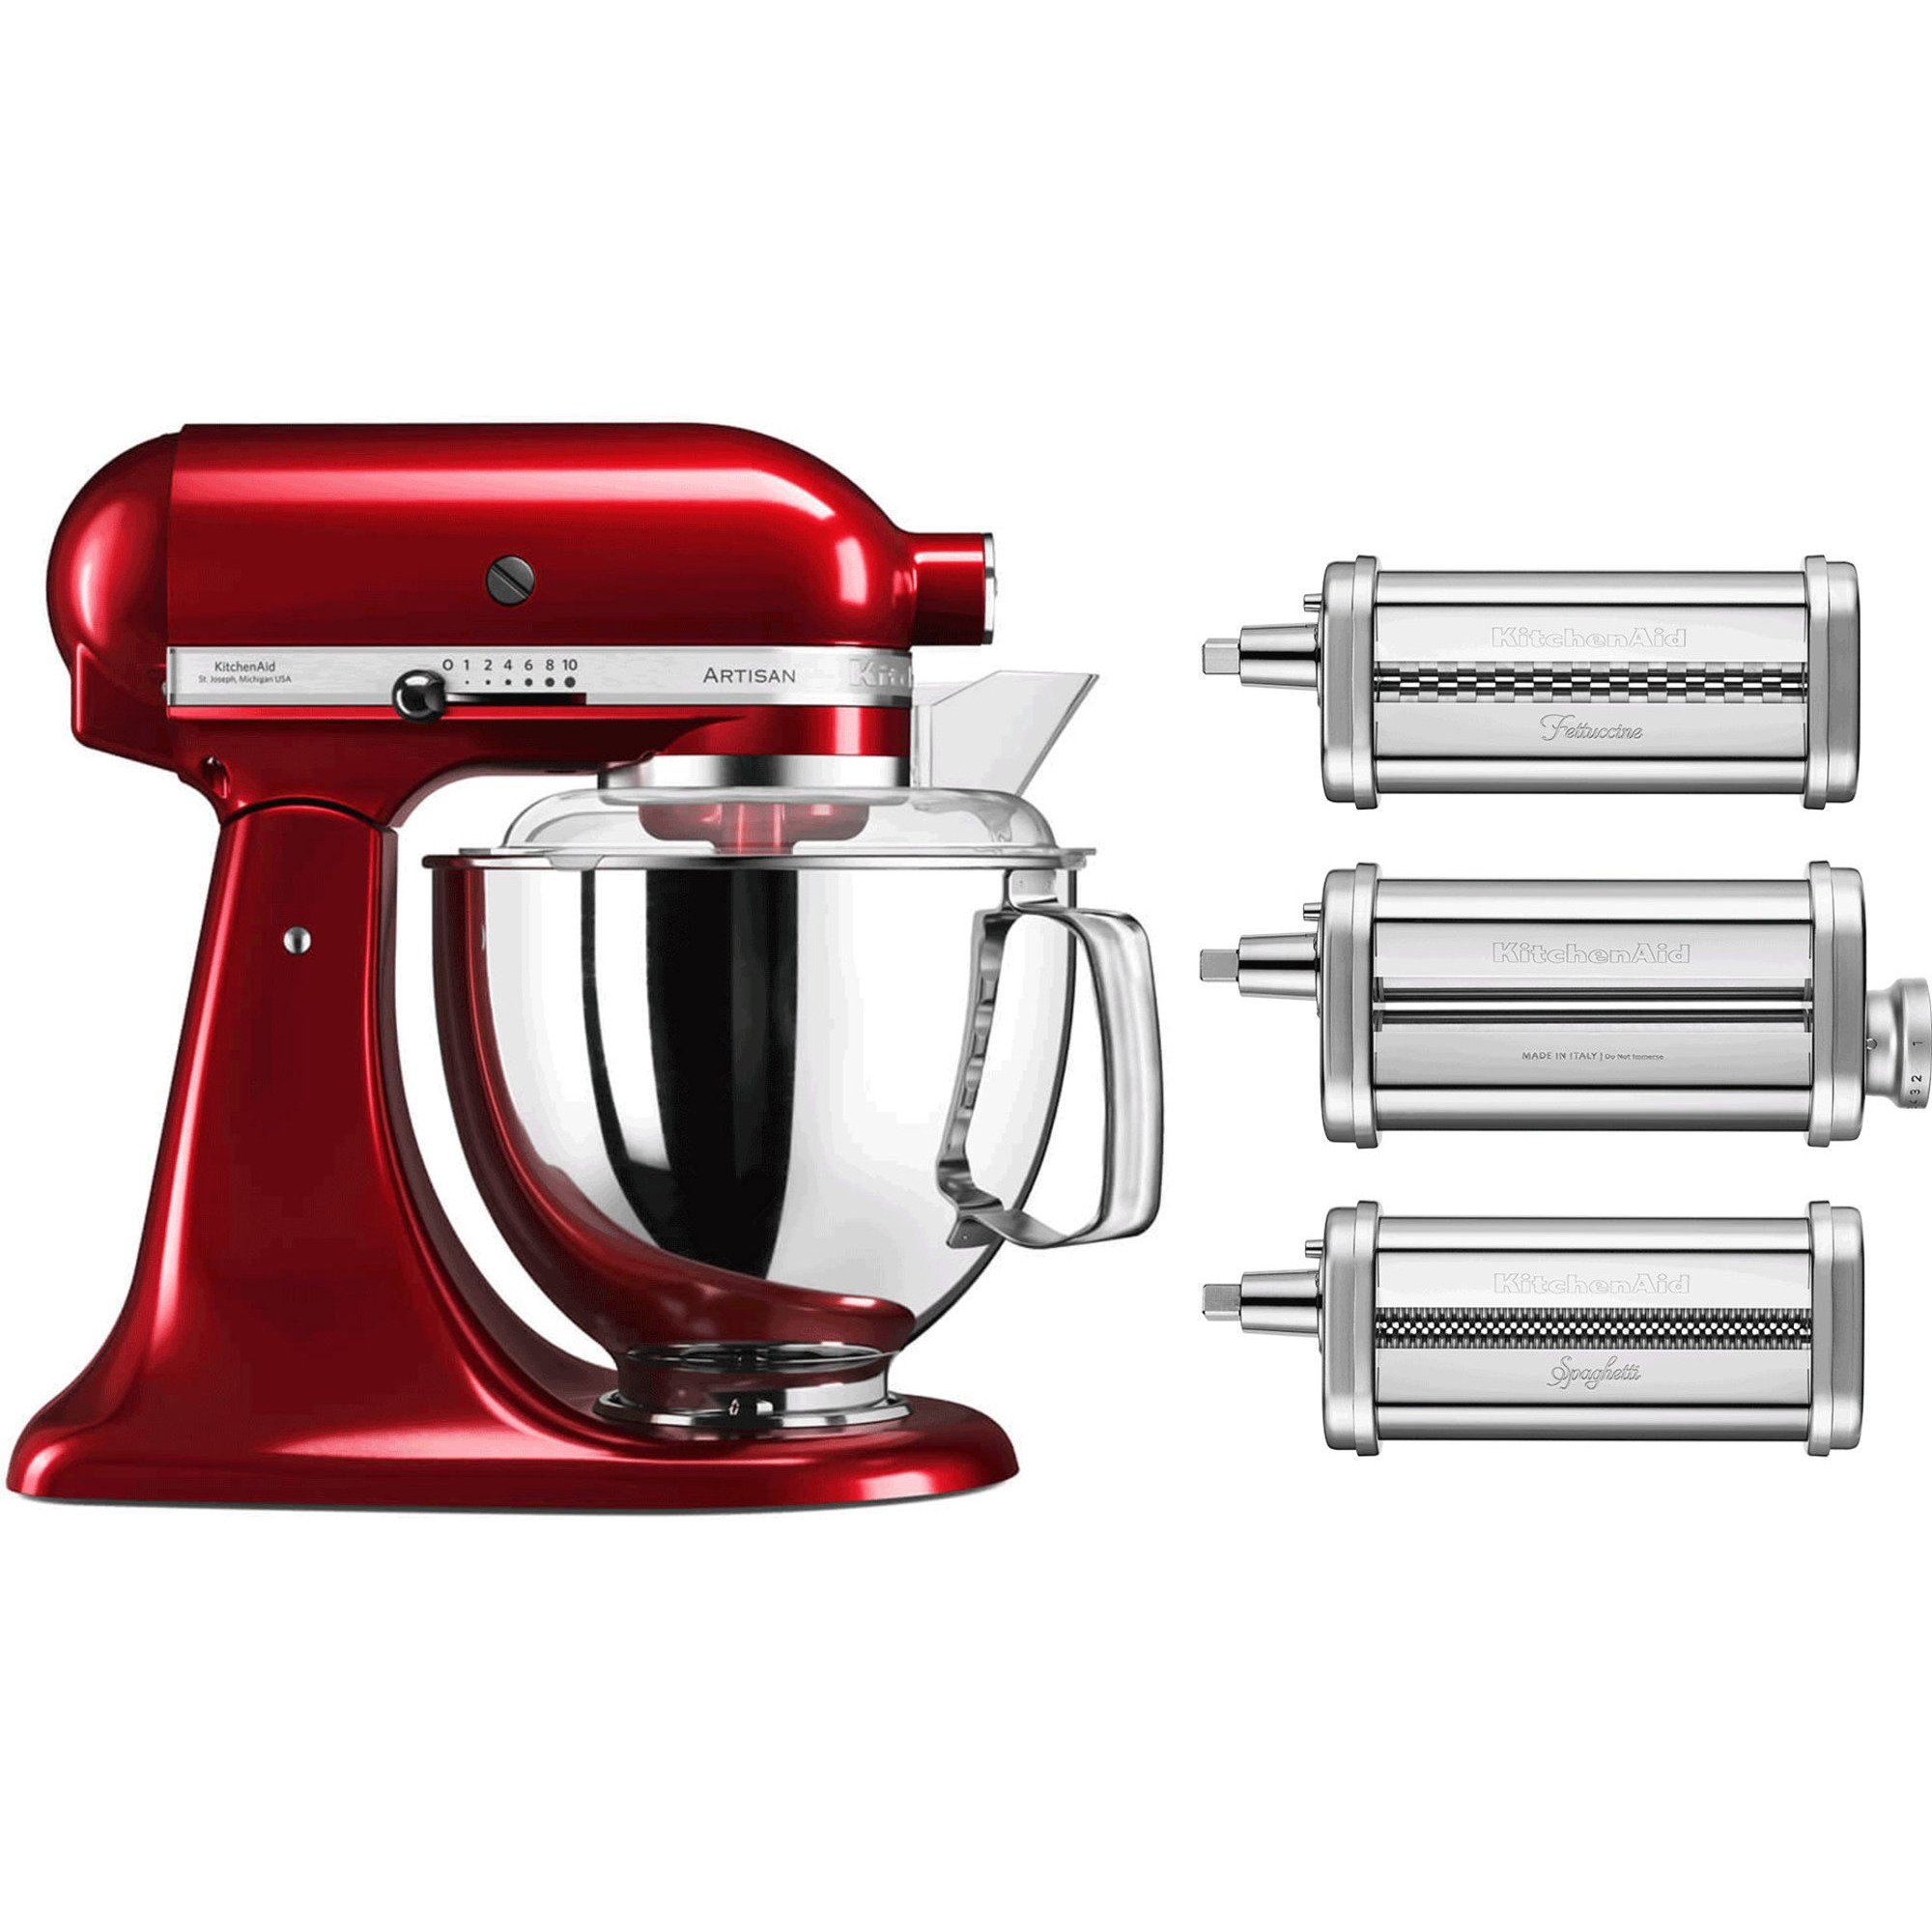 Billede af KitchenAid Artisan KSM175 røremaskine (Rød metallic) + pastatilbehør